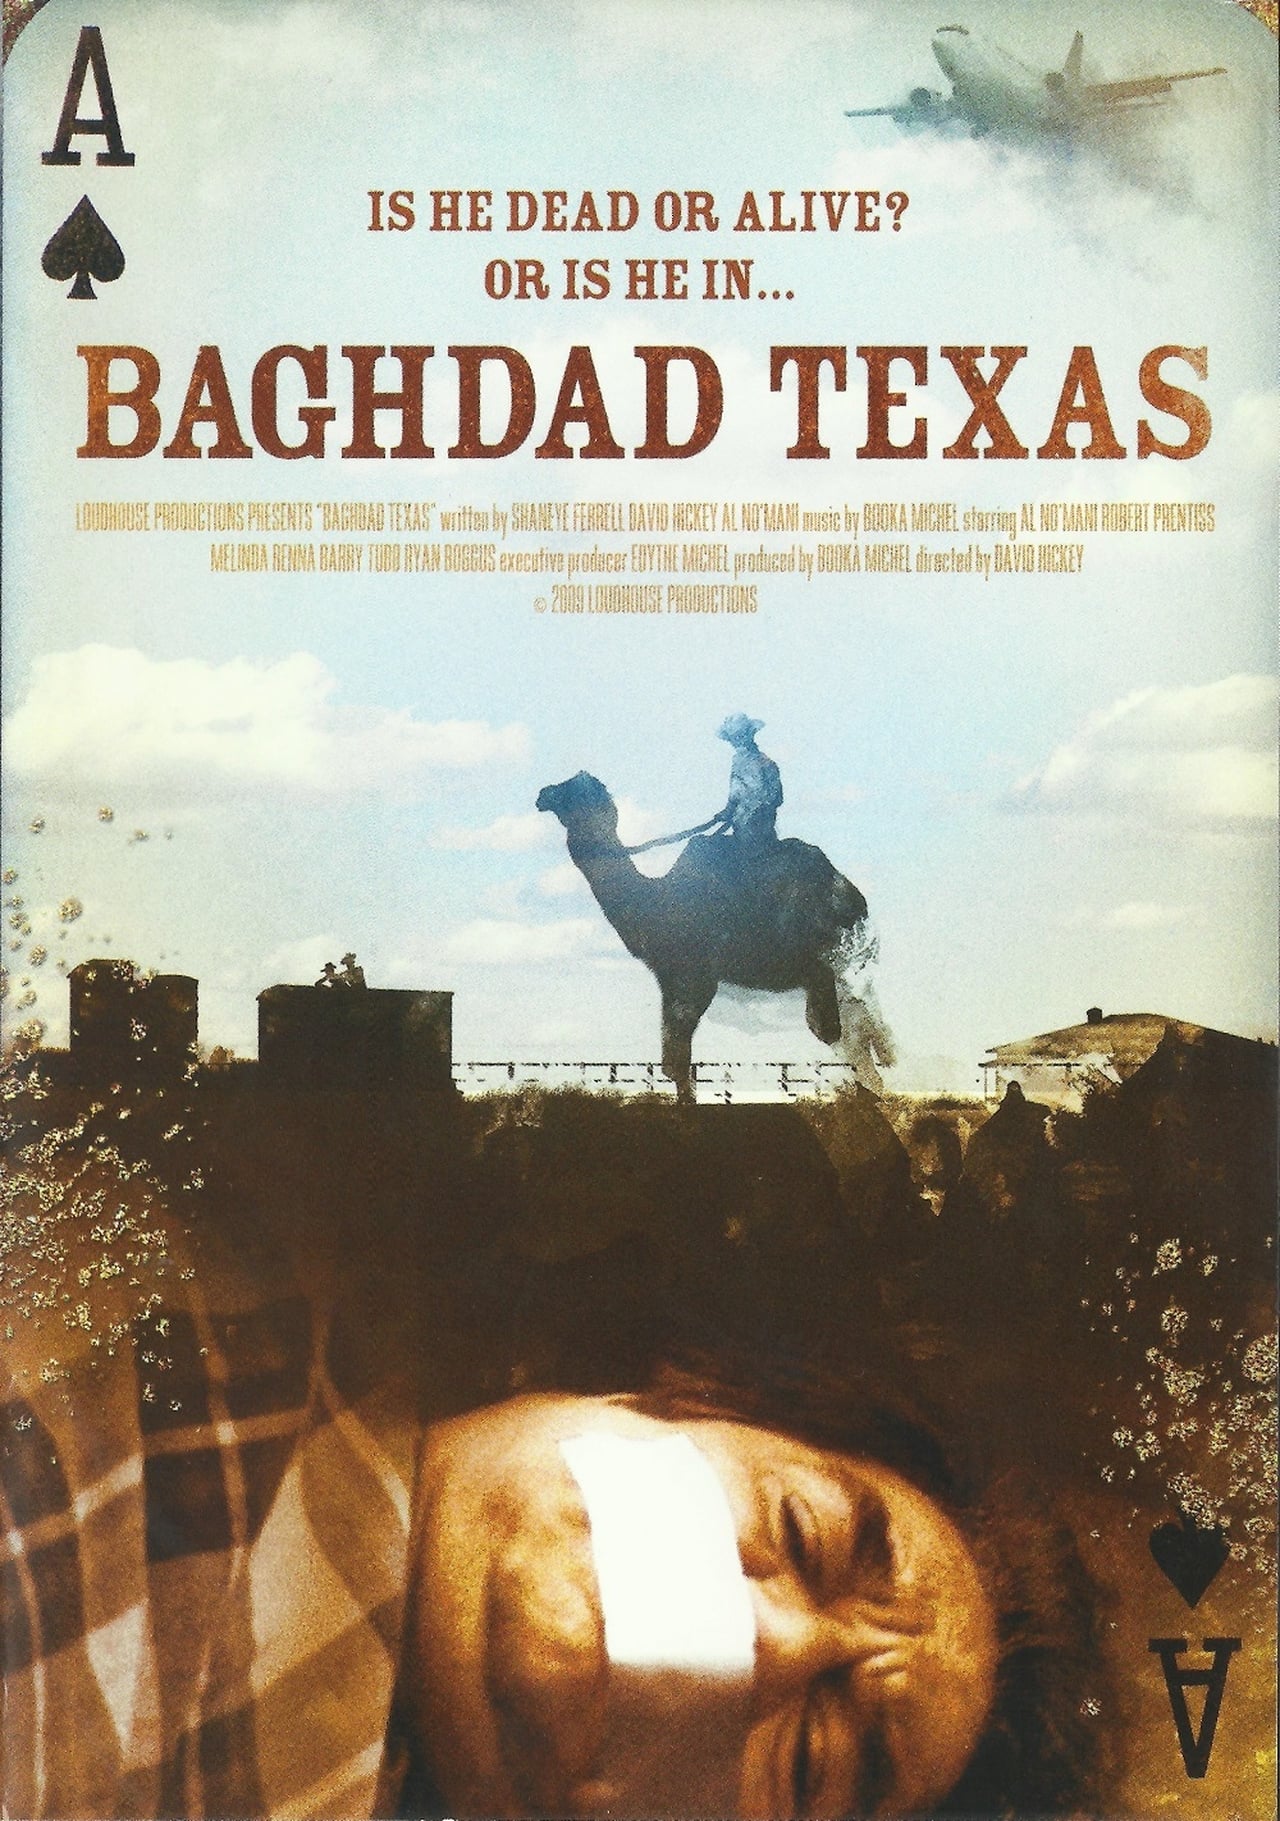 Baghdad Texas